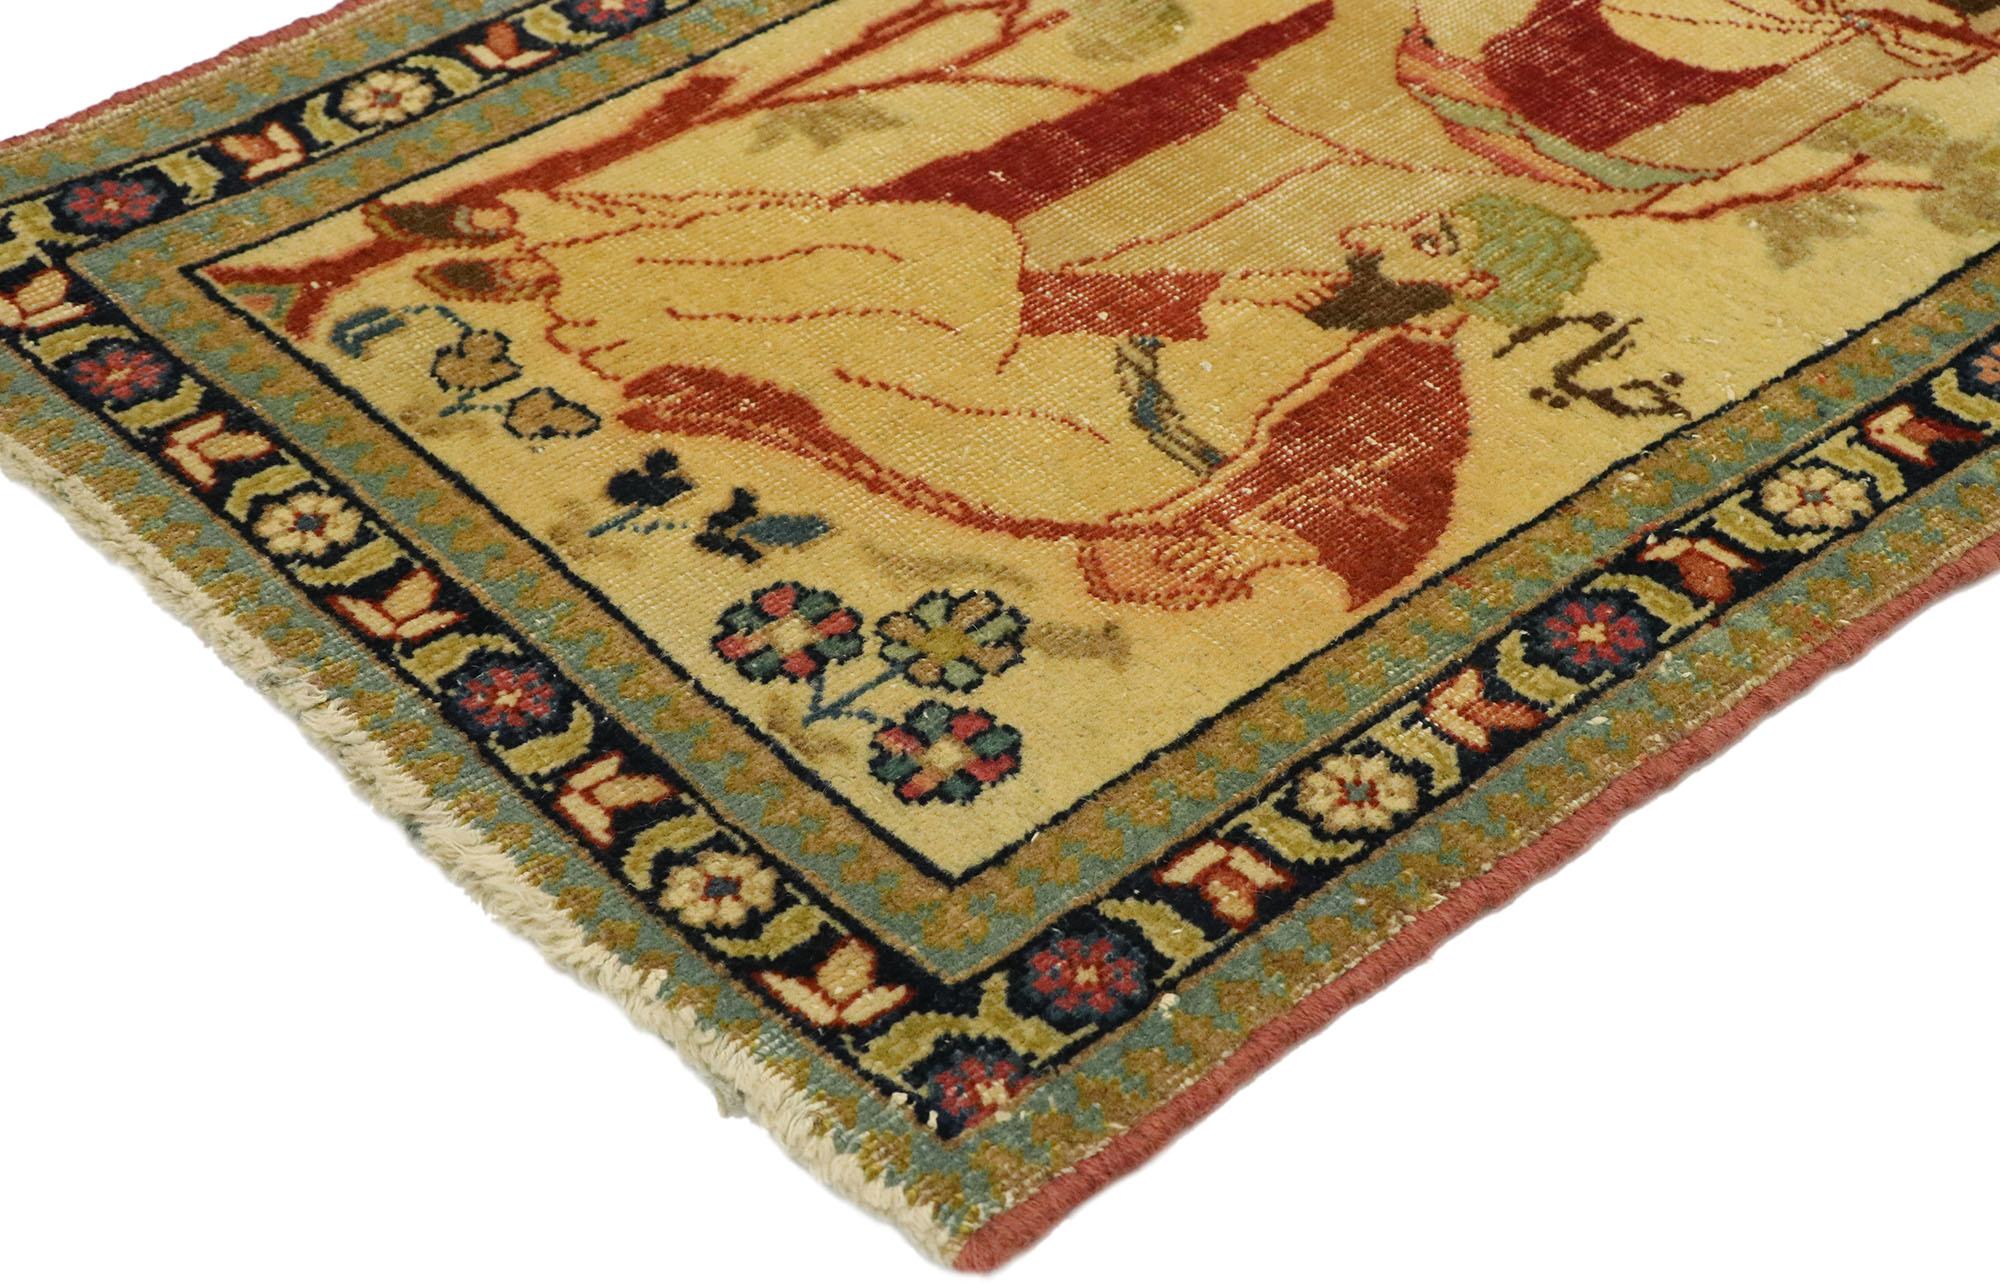 71535, tapis persan ancien Tabriz Pictorial représentant un derviche avec son maître. Ce tapis pictural en laine nouée à la main représente un derviche et son maître dans une scène de jardin. Le maître et le derviche portent des vêtements